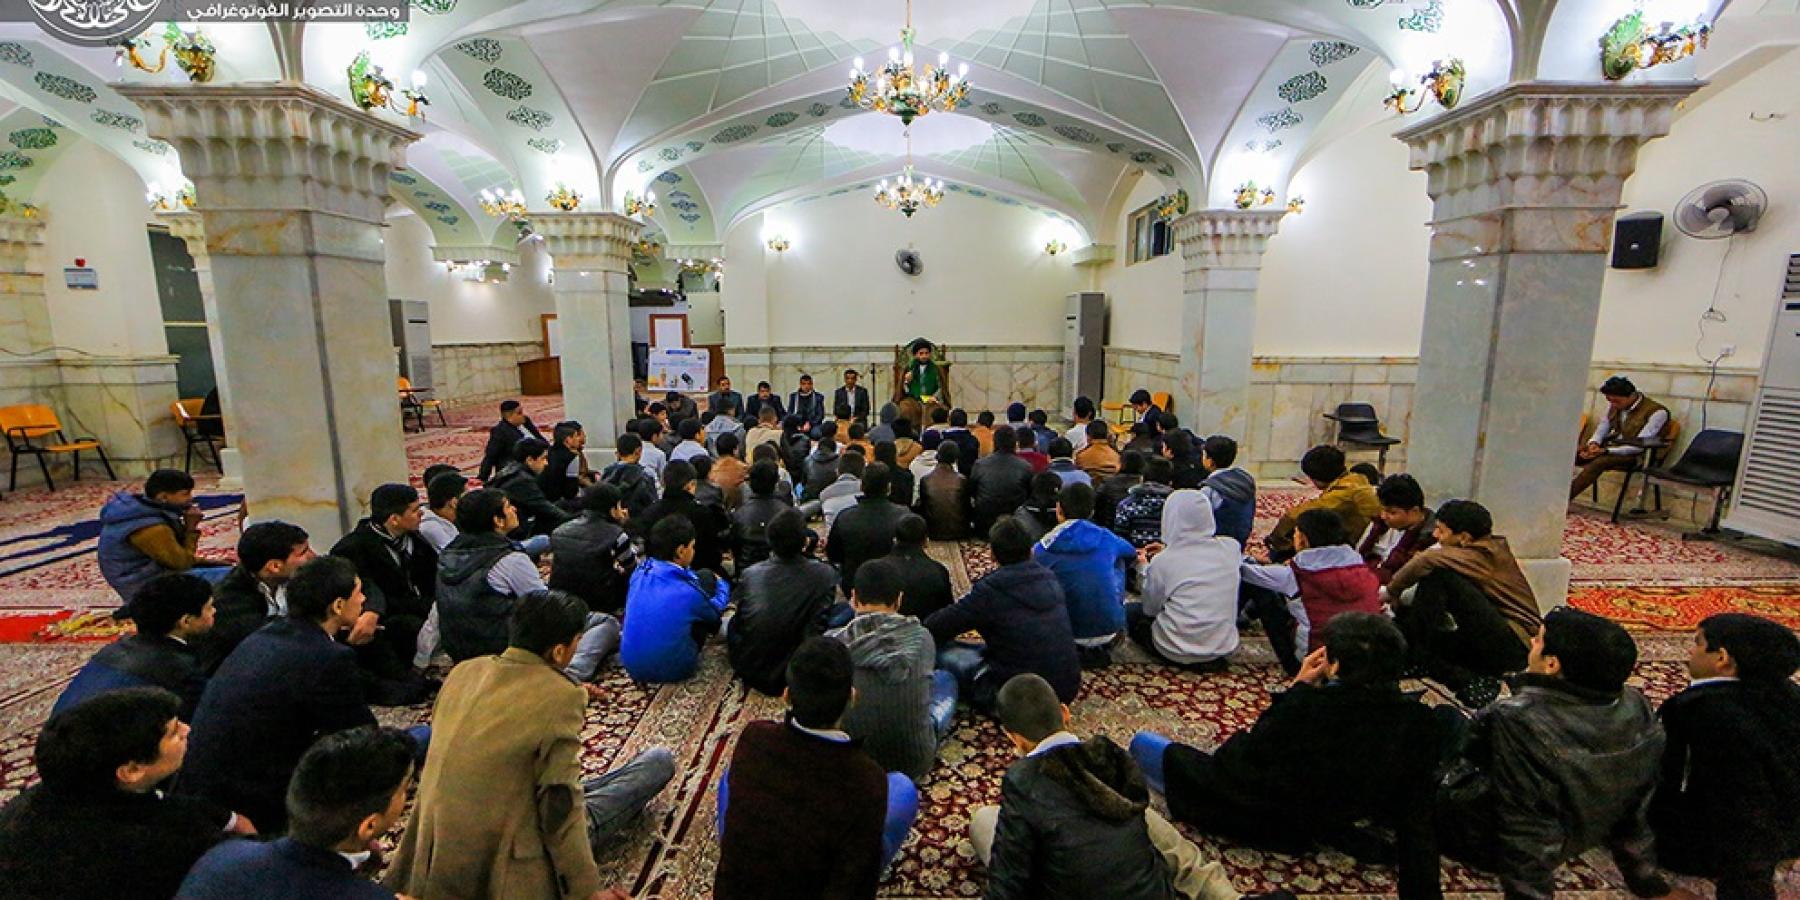         دار القرآن الكريم في العتبة العلوية المقدسة تبدأ باستضافة طلبة مدارس مدينة النجف في فعالياتها القرآنية.